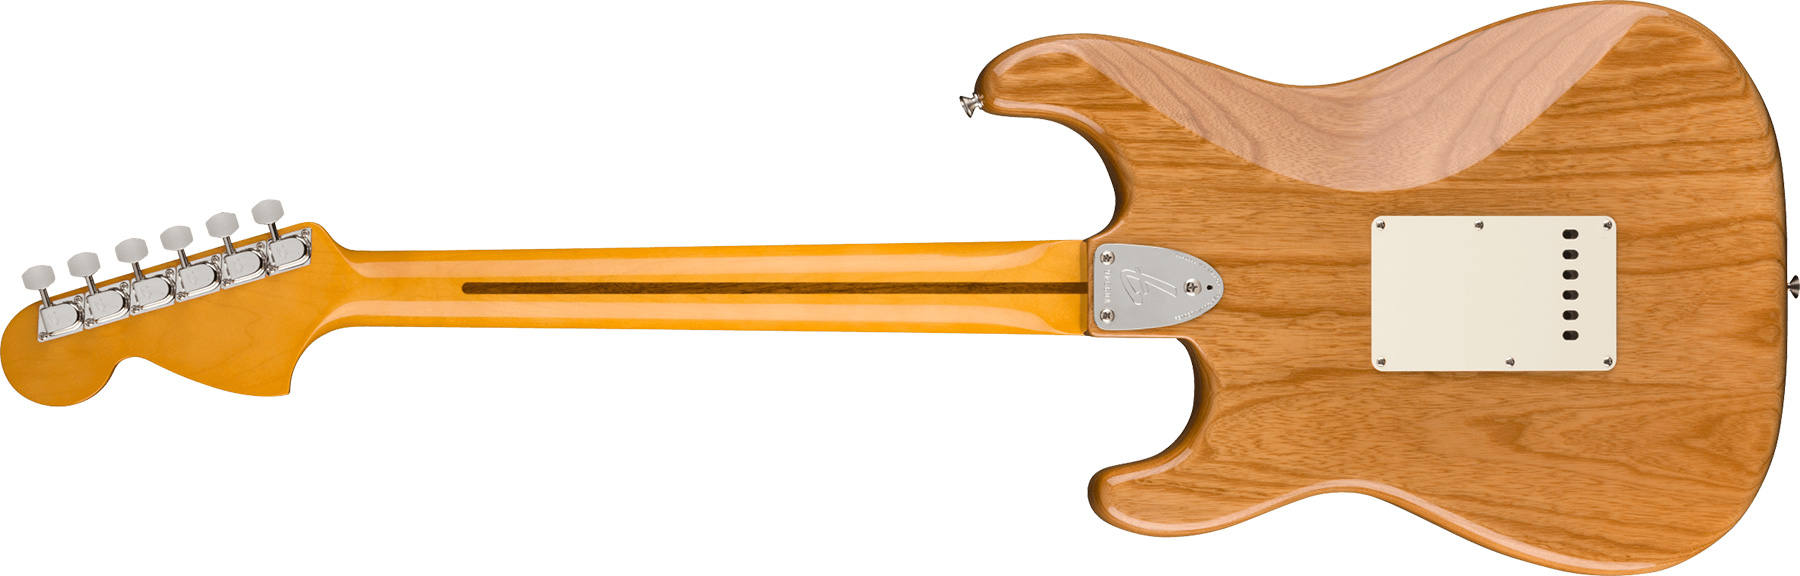 Fender Strat 1973 American Vintage Ii Usa 3s Trem Rw - Aged Natural - Guitare Électrique Forme Str - Variation 1